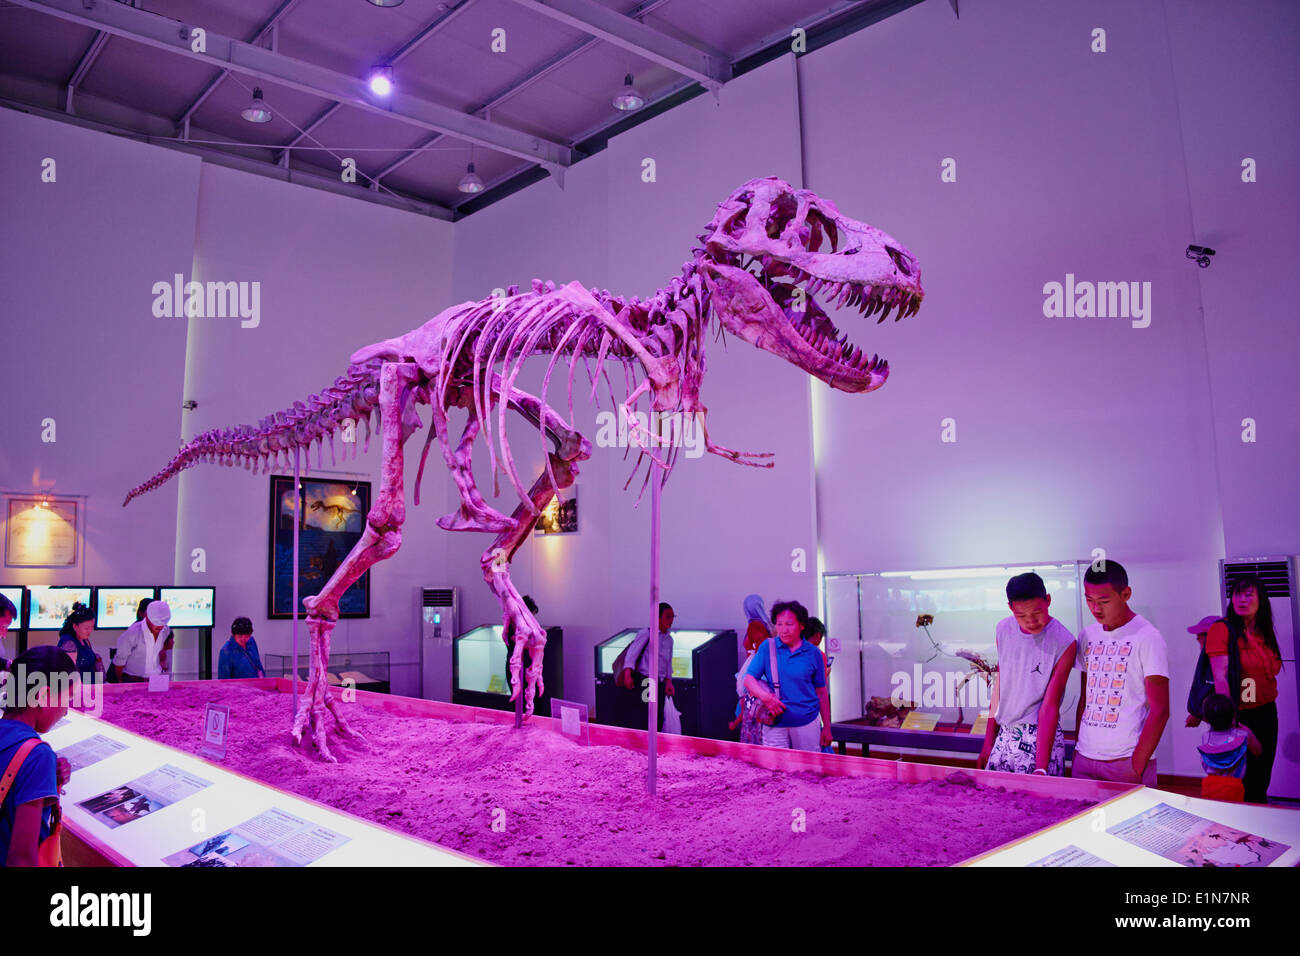 La Mongolie, Oulan Bator, squelette de dinosaure (Tyrannosaurus) exposés à Sukhbaatar Square Banque D'Images